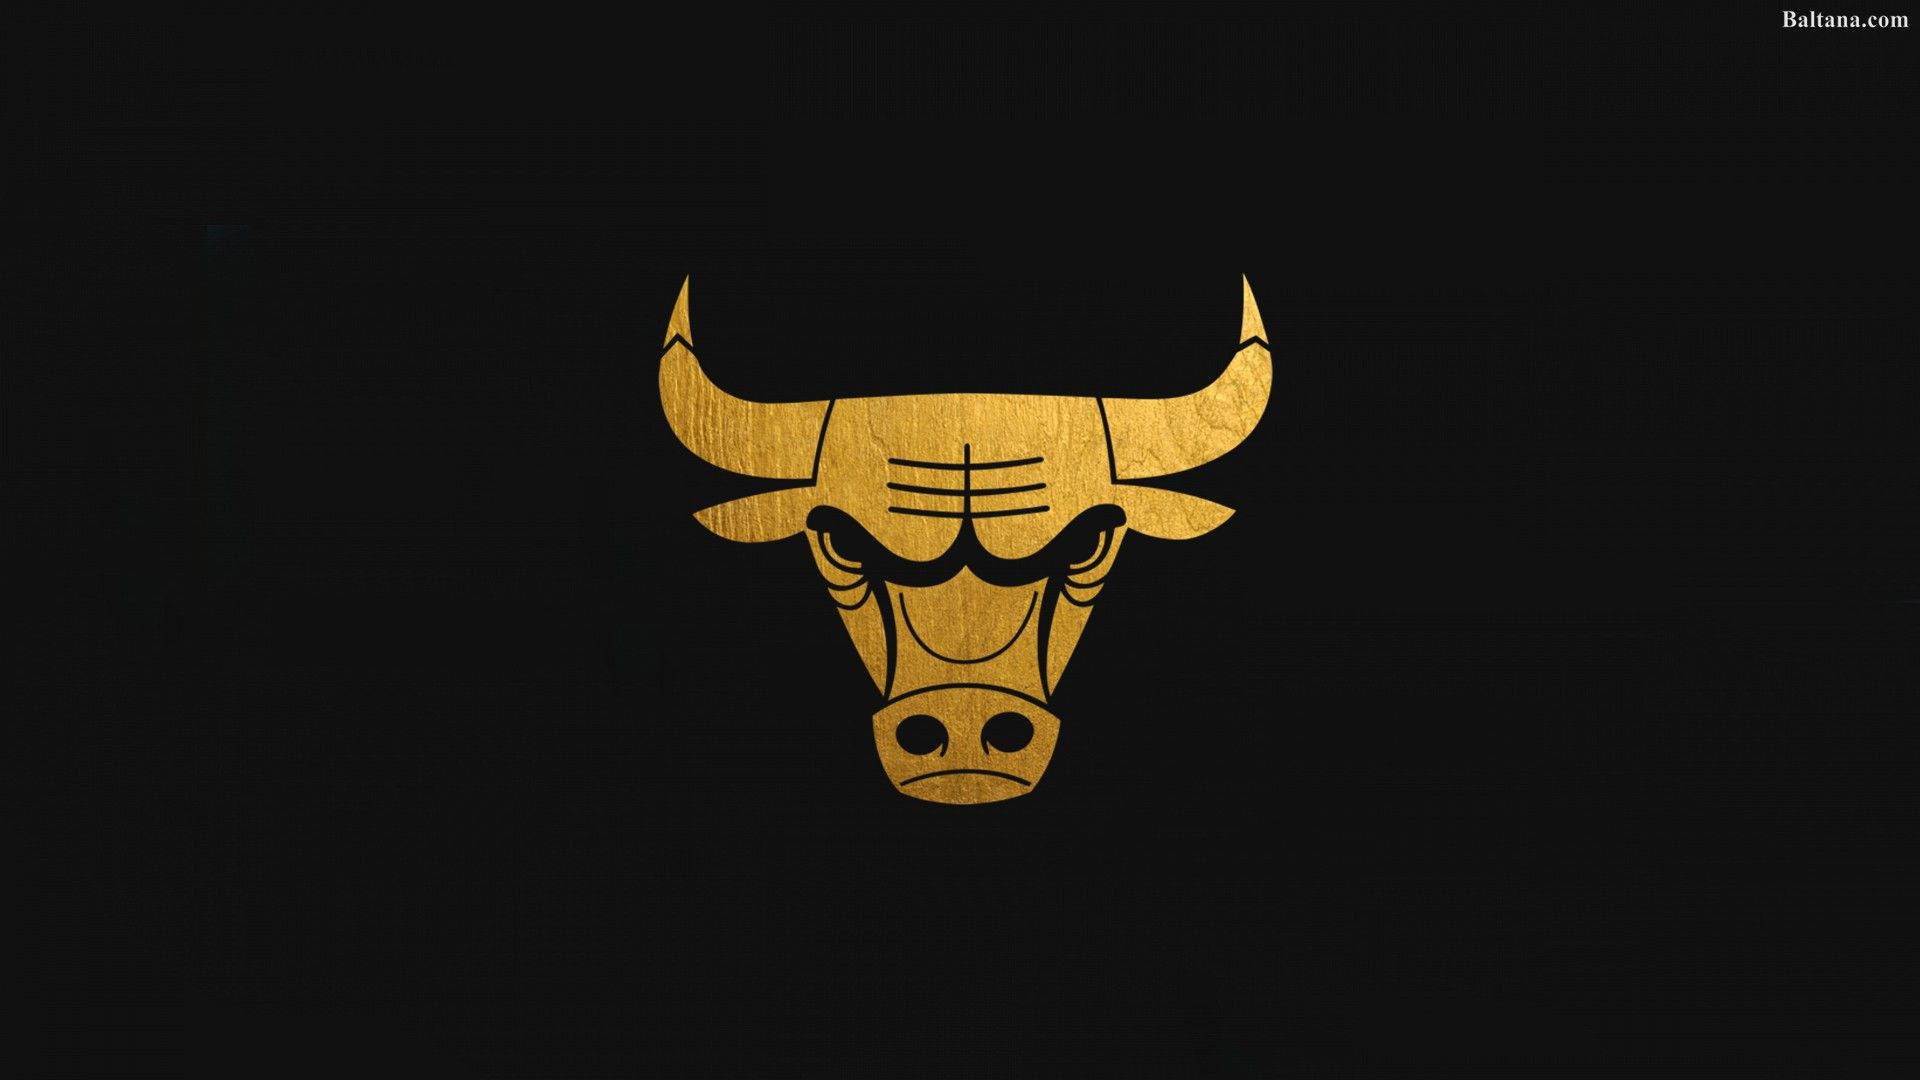 Chicago Bulls Gold Logo